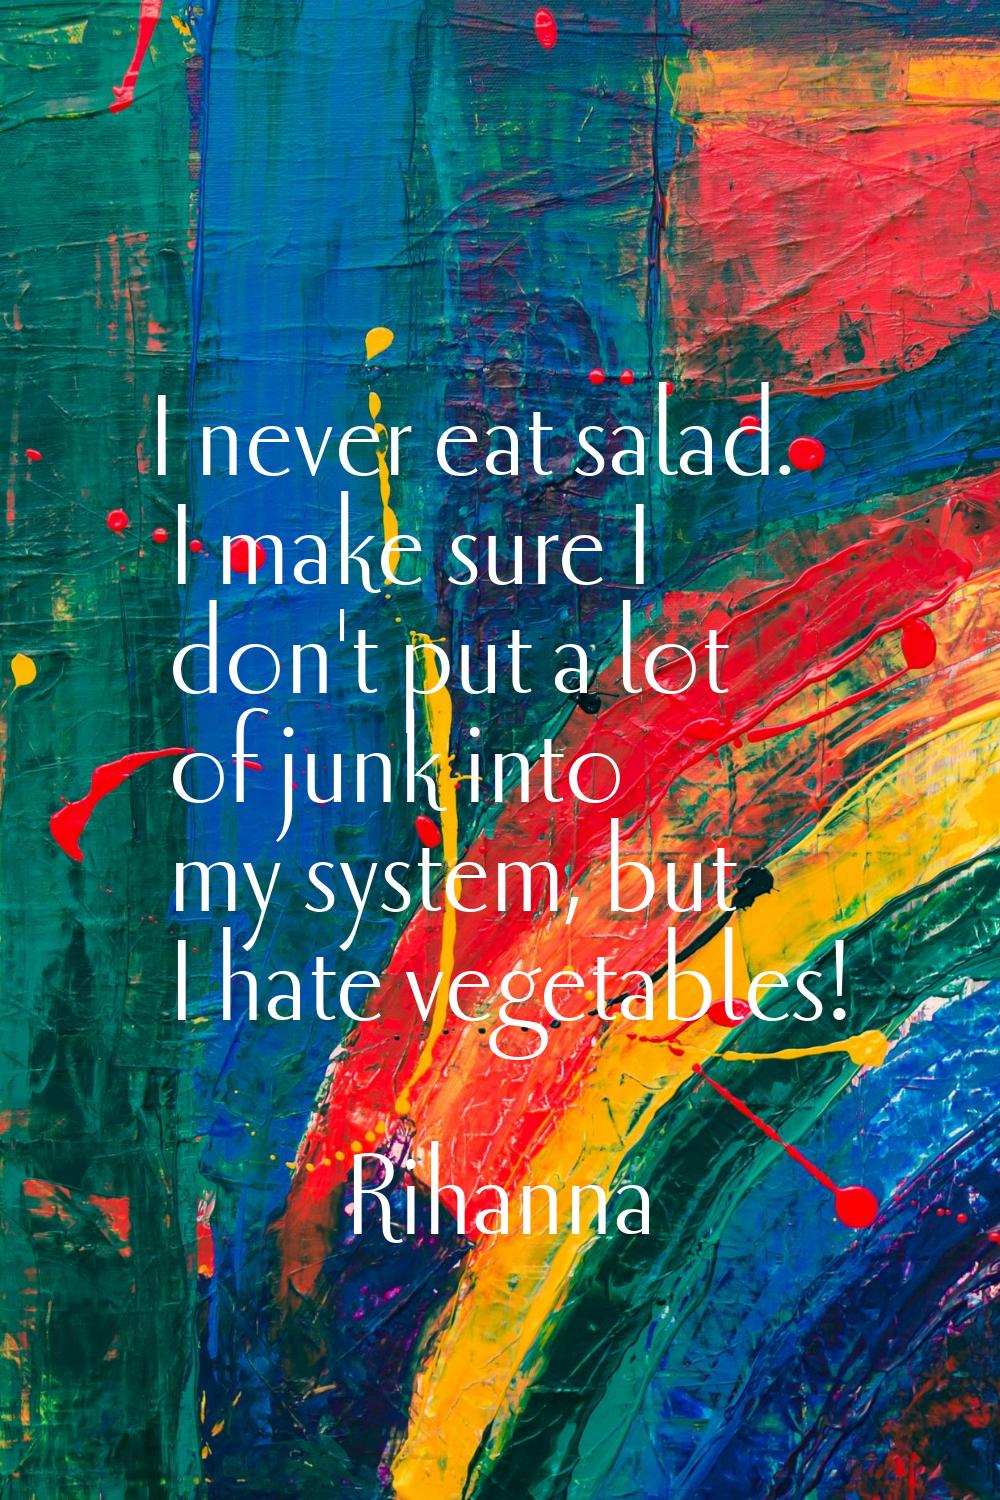 I never eat salad. I make sure I don't put a lot of junk into my system, but I hate vegetables!